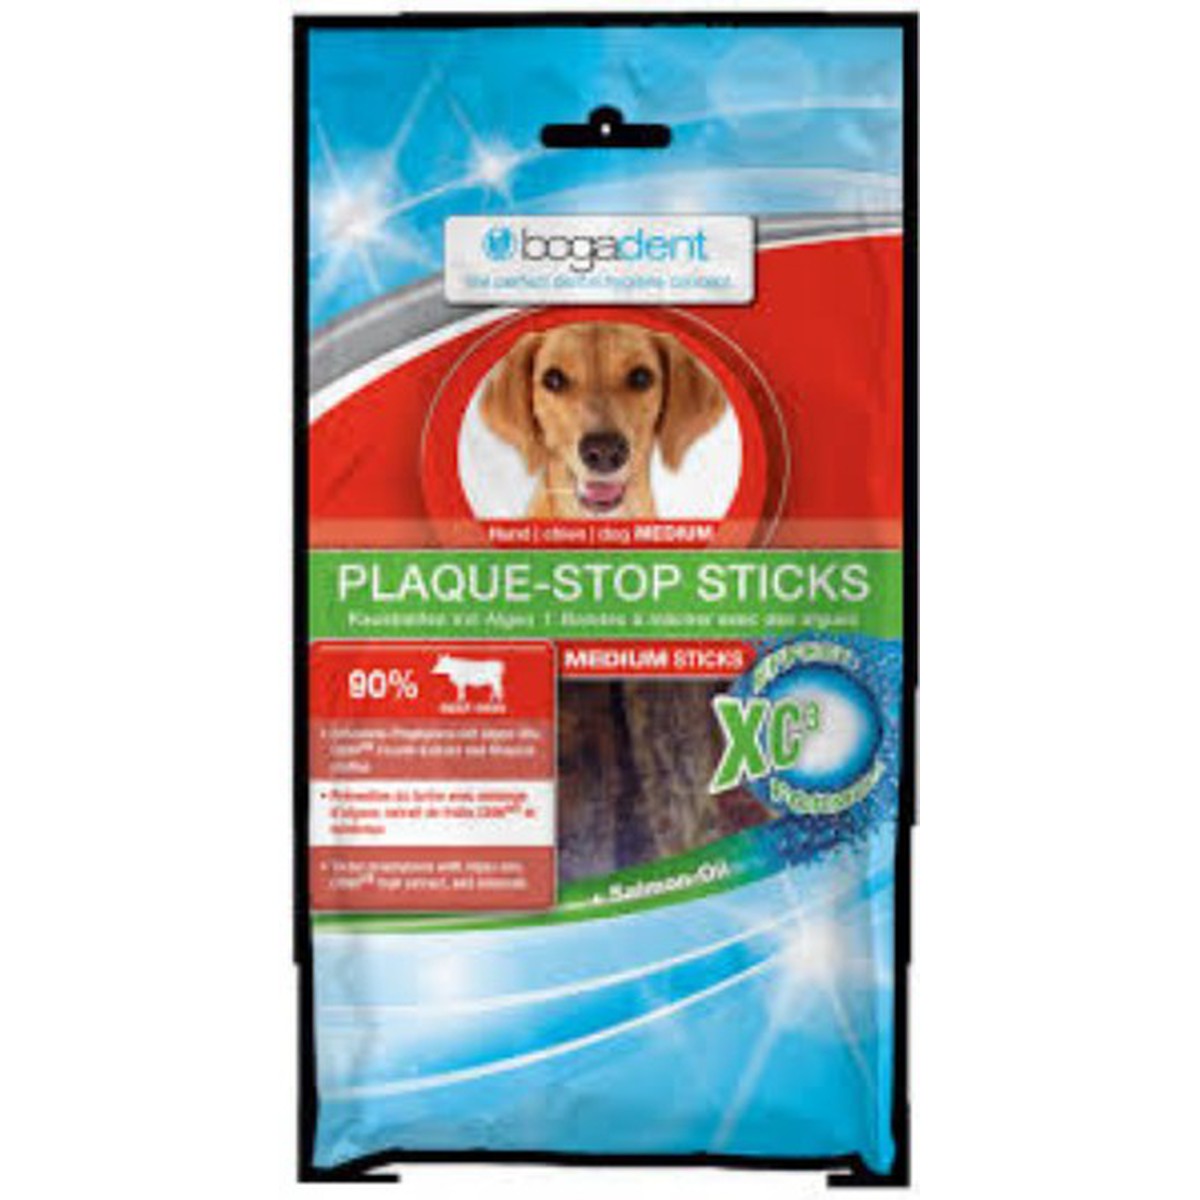   bogadent Plaque-Stop Sticks 100g  